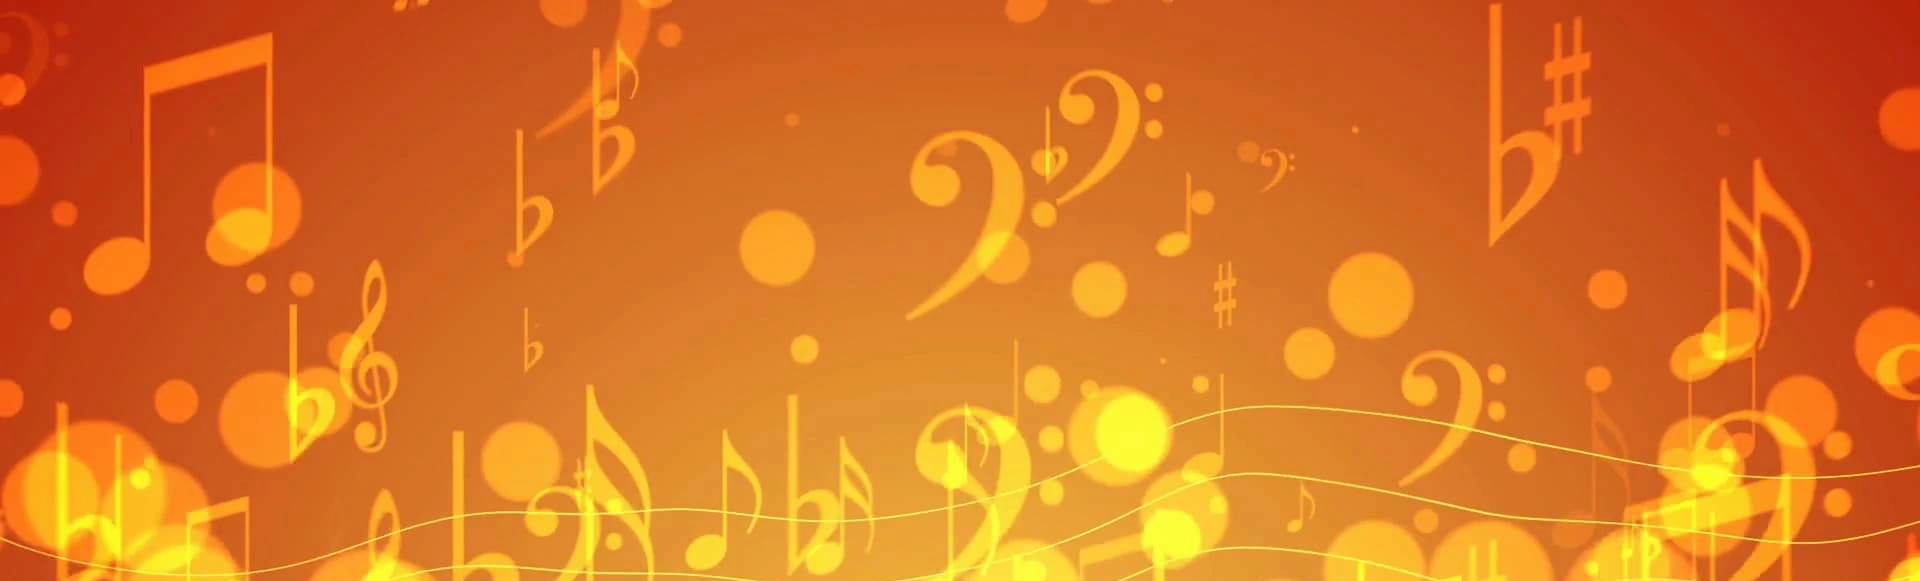 Загадочный мир музыки приглашает вас на уникальное путешествие в Зал органной и камерной музыки им. Дебольской, где состоится завораживающий концерт "Музыка Высших измерений" от талантливой Ларисы Устьянцевой.